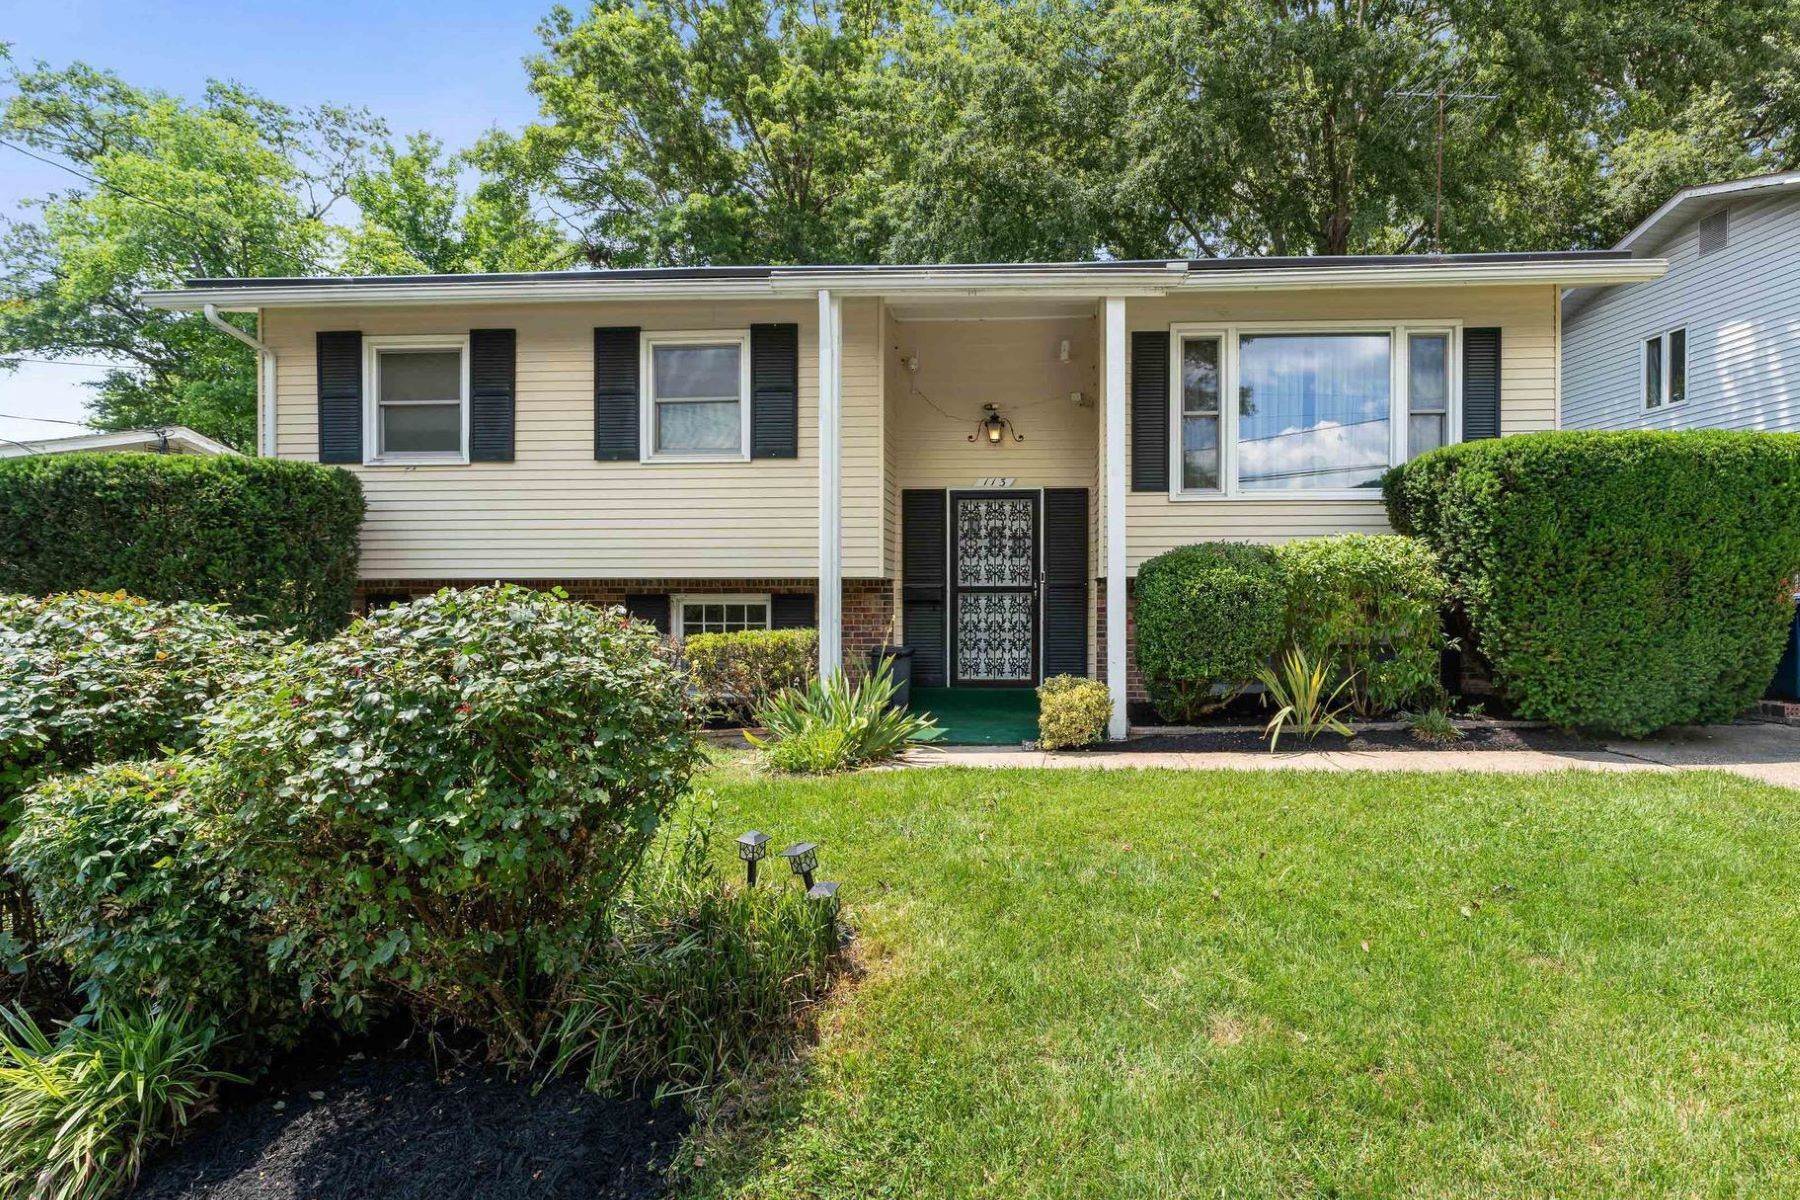 Single Family Homes для того Продажа на Greenbelt, Мэриленд 20770 Соединенные Штаты